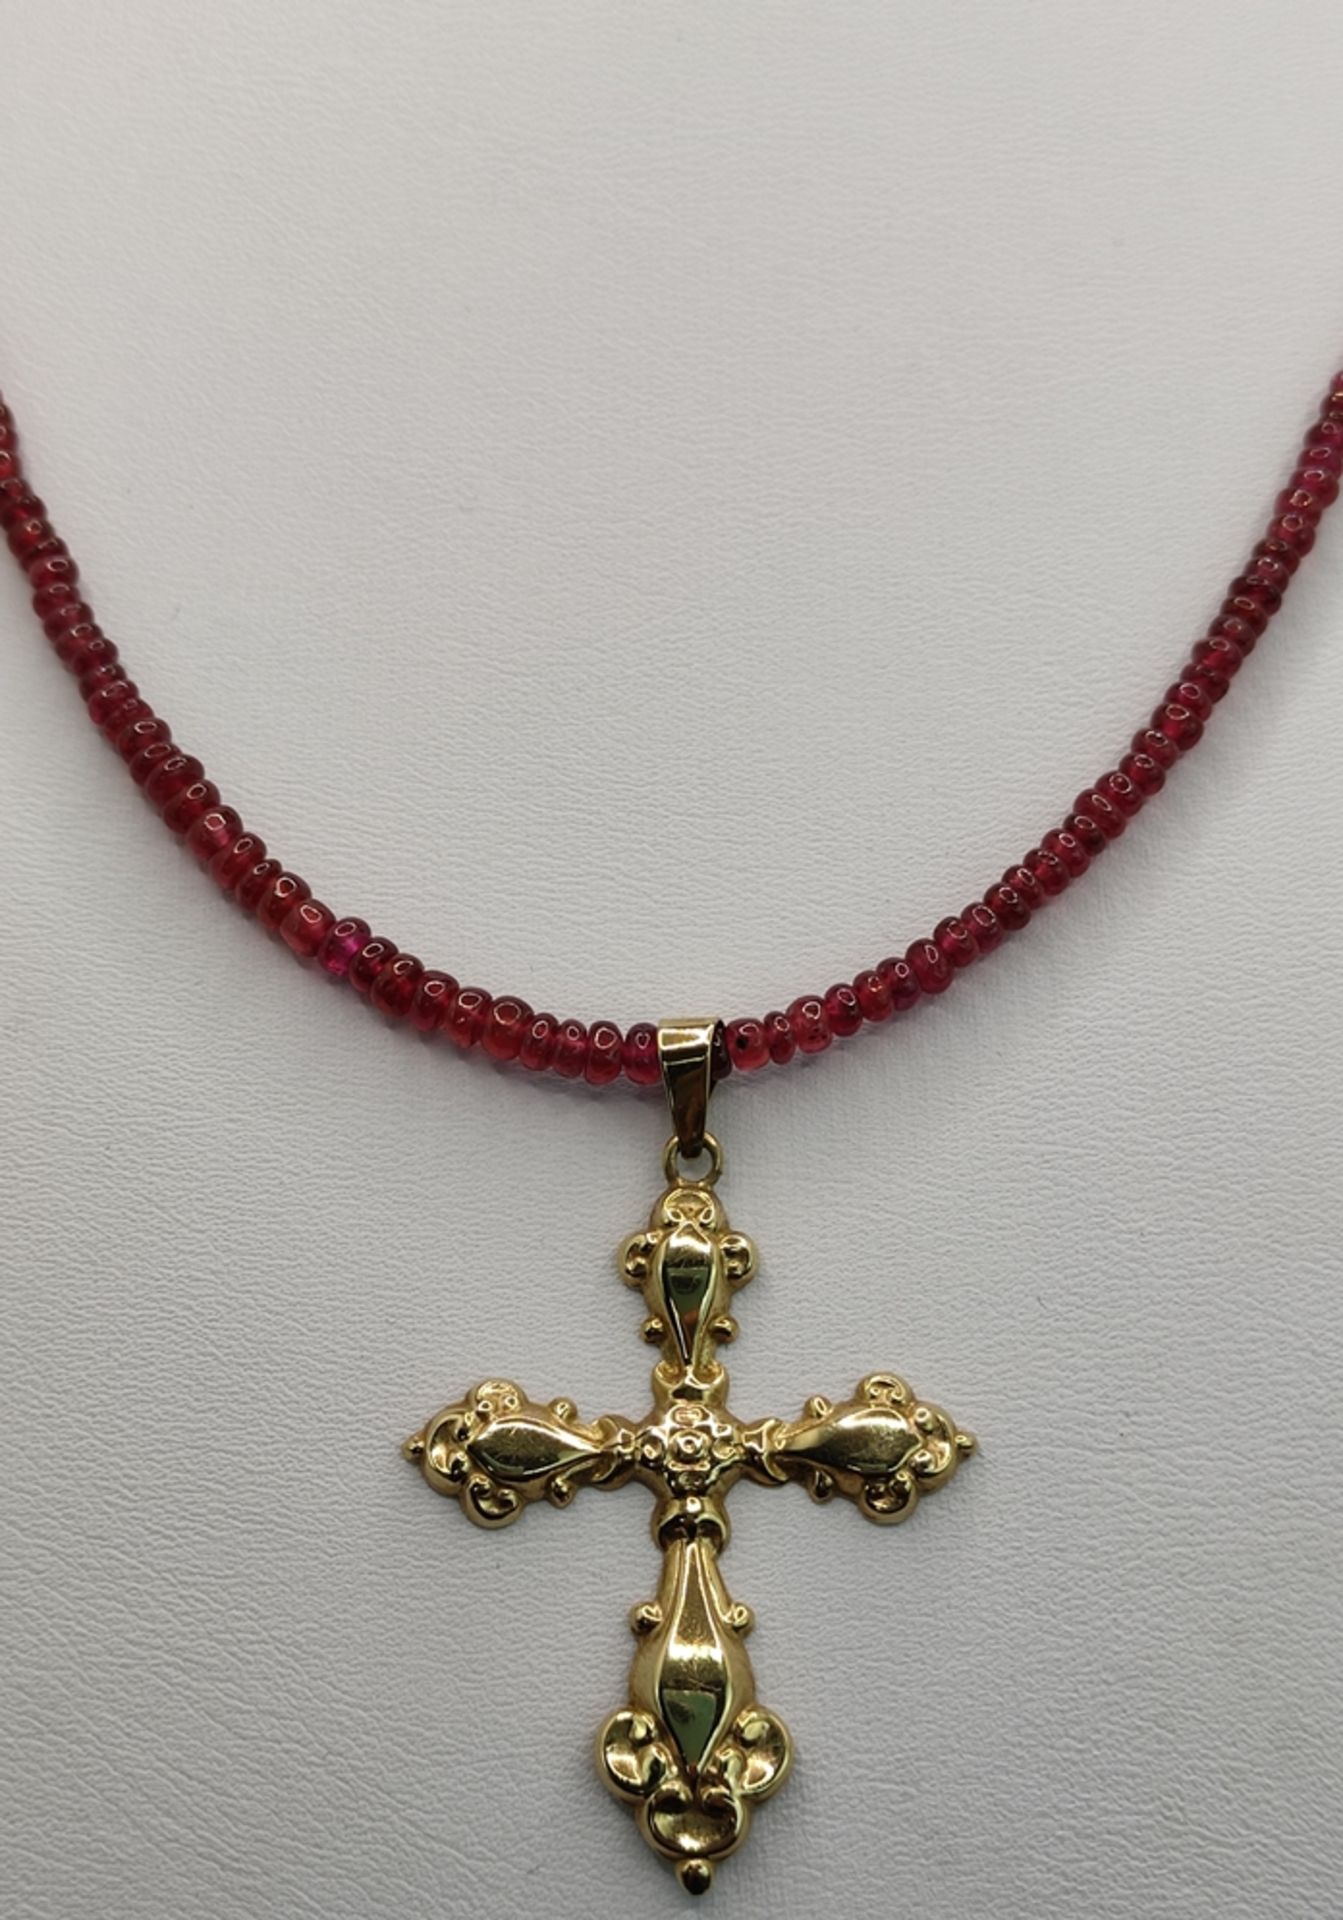 Kreuz-Anhänger an Rubinkette, reliefiertes Kreuz (4,3x3cm), 333/8K Gelbgold, an Rubin-Rondellenkett